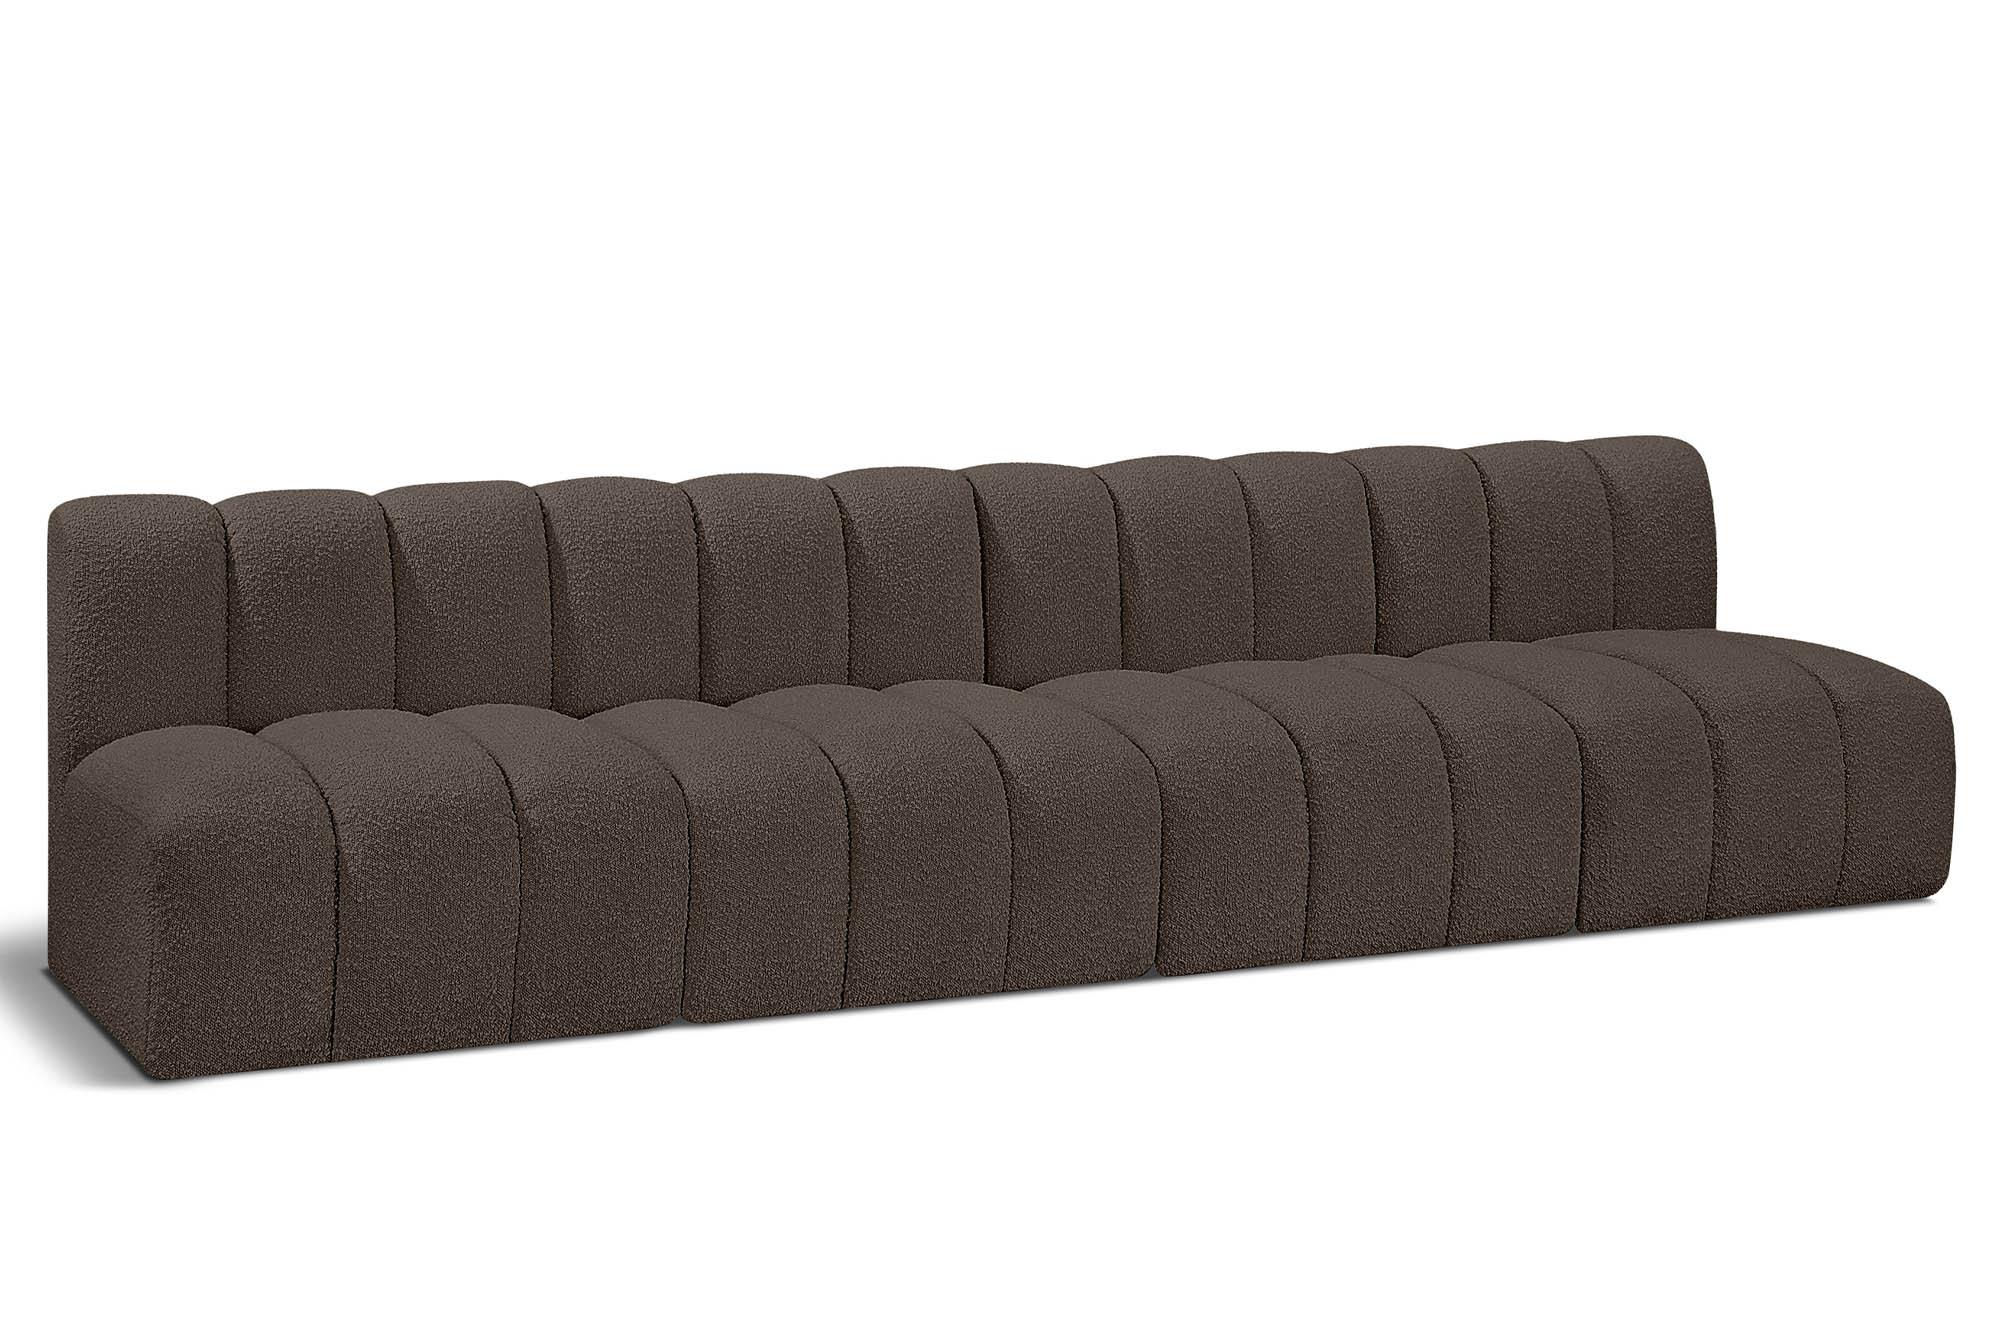 Contemporary, Modern Modular Sectional Sofa ARC 102Brown-S4E 102Brown-S4E in Brown 